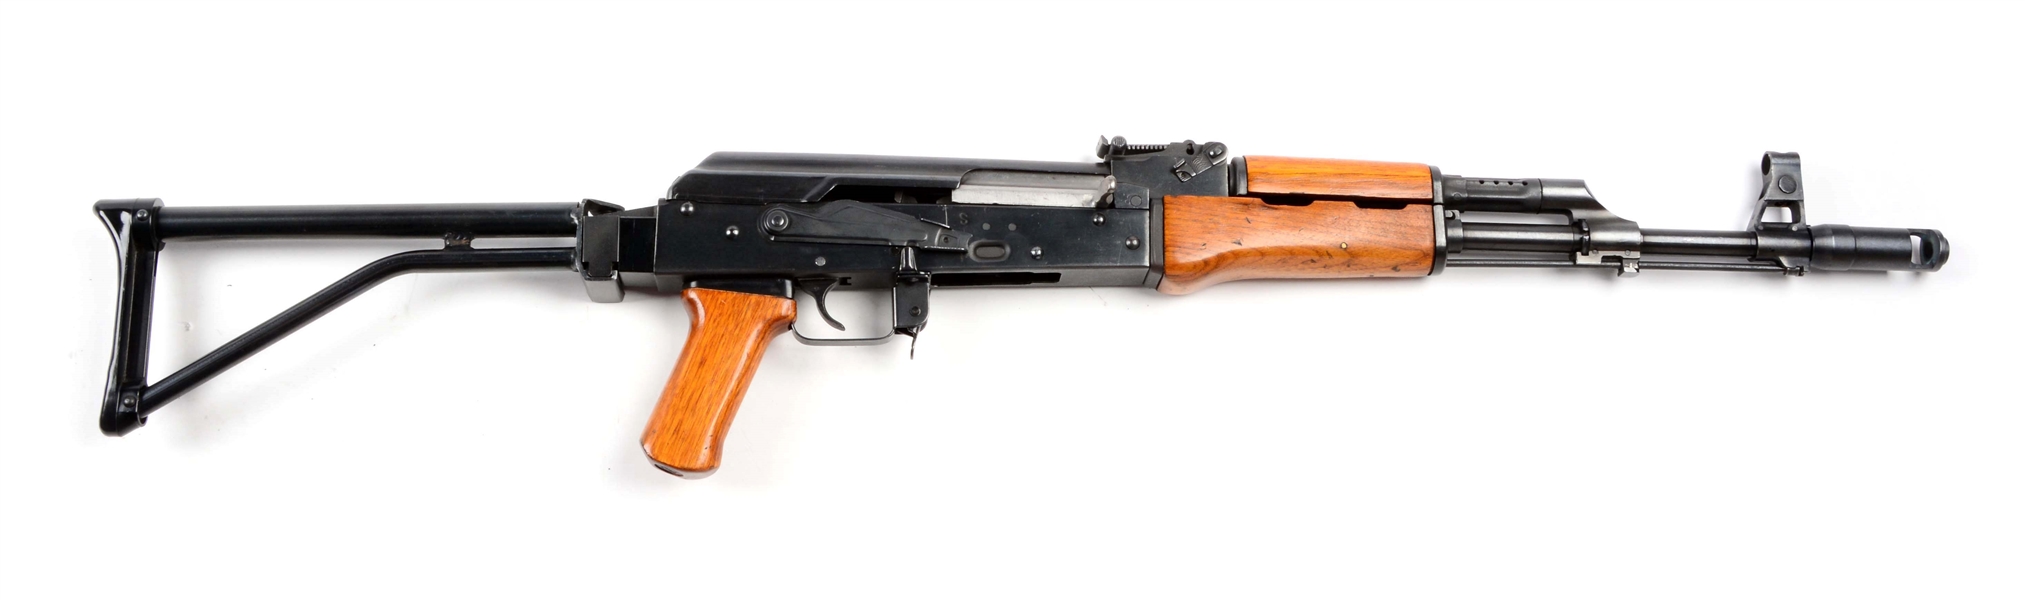 (M) CHINESE NORINCO TYPE 56 AK-47 SEMI-AUTOMATIC RIFLE.